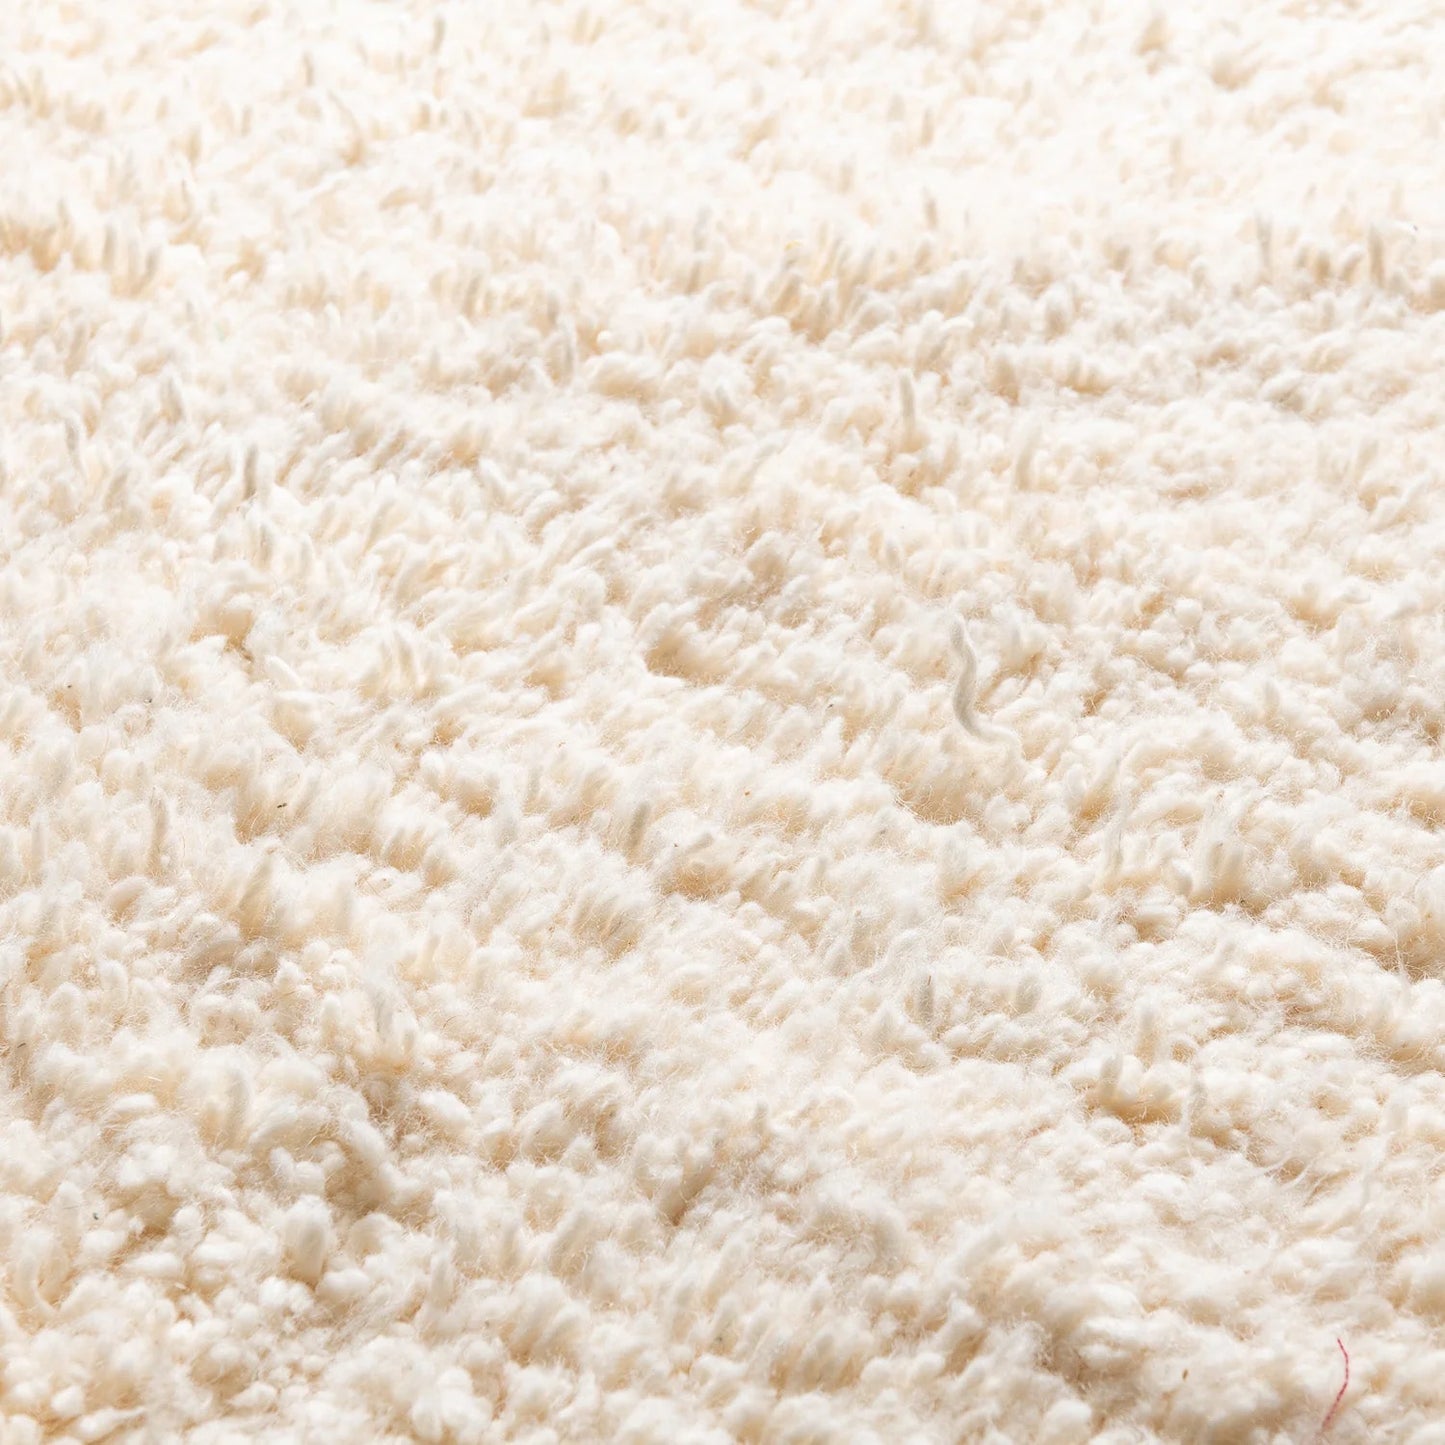 Sahara Sands - Tapis en laine marocain tissé à la main - Design minimaliste - Tailles multiples